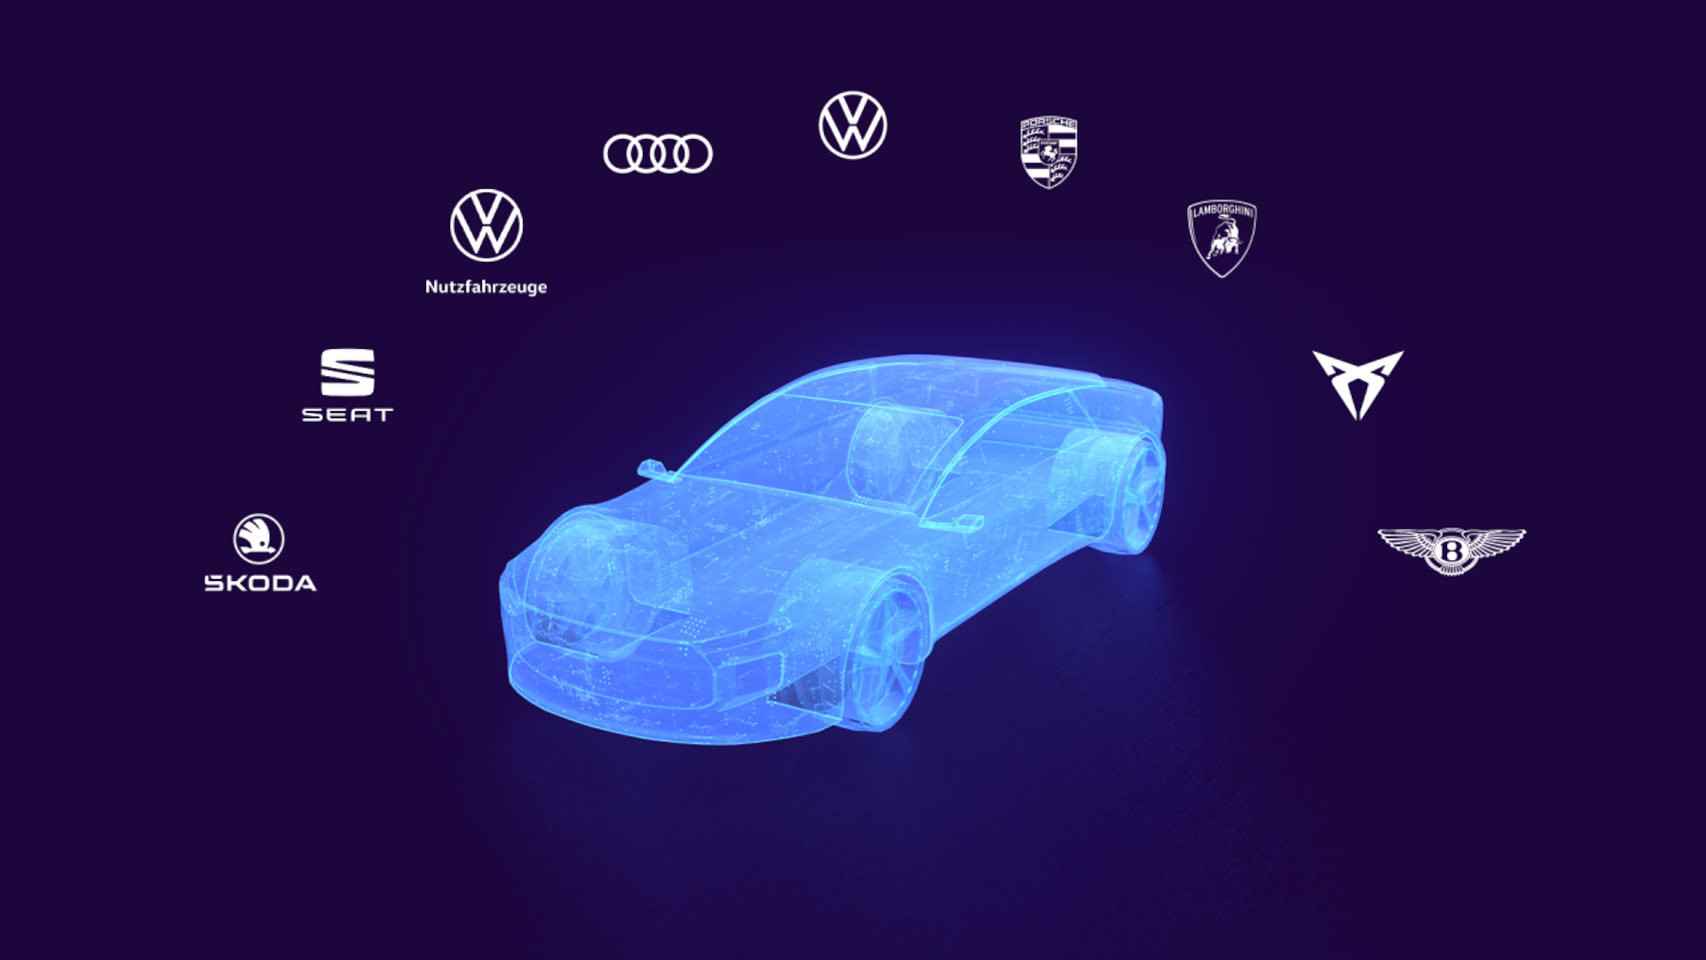 La tecnología móvil desarrollada por Cariad y Vivo llegaría a todas las marcas del grupo VW